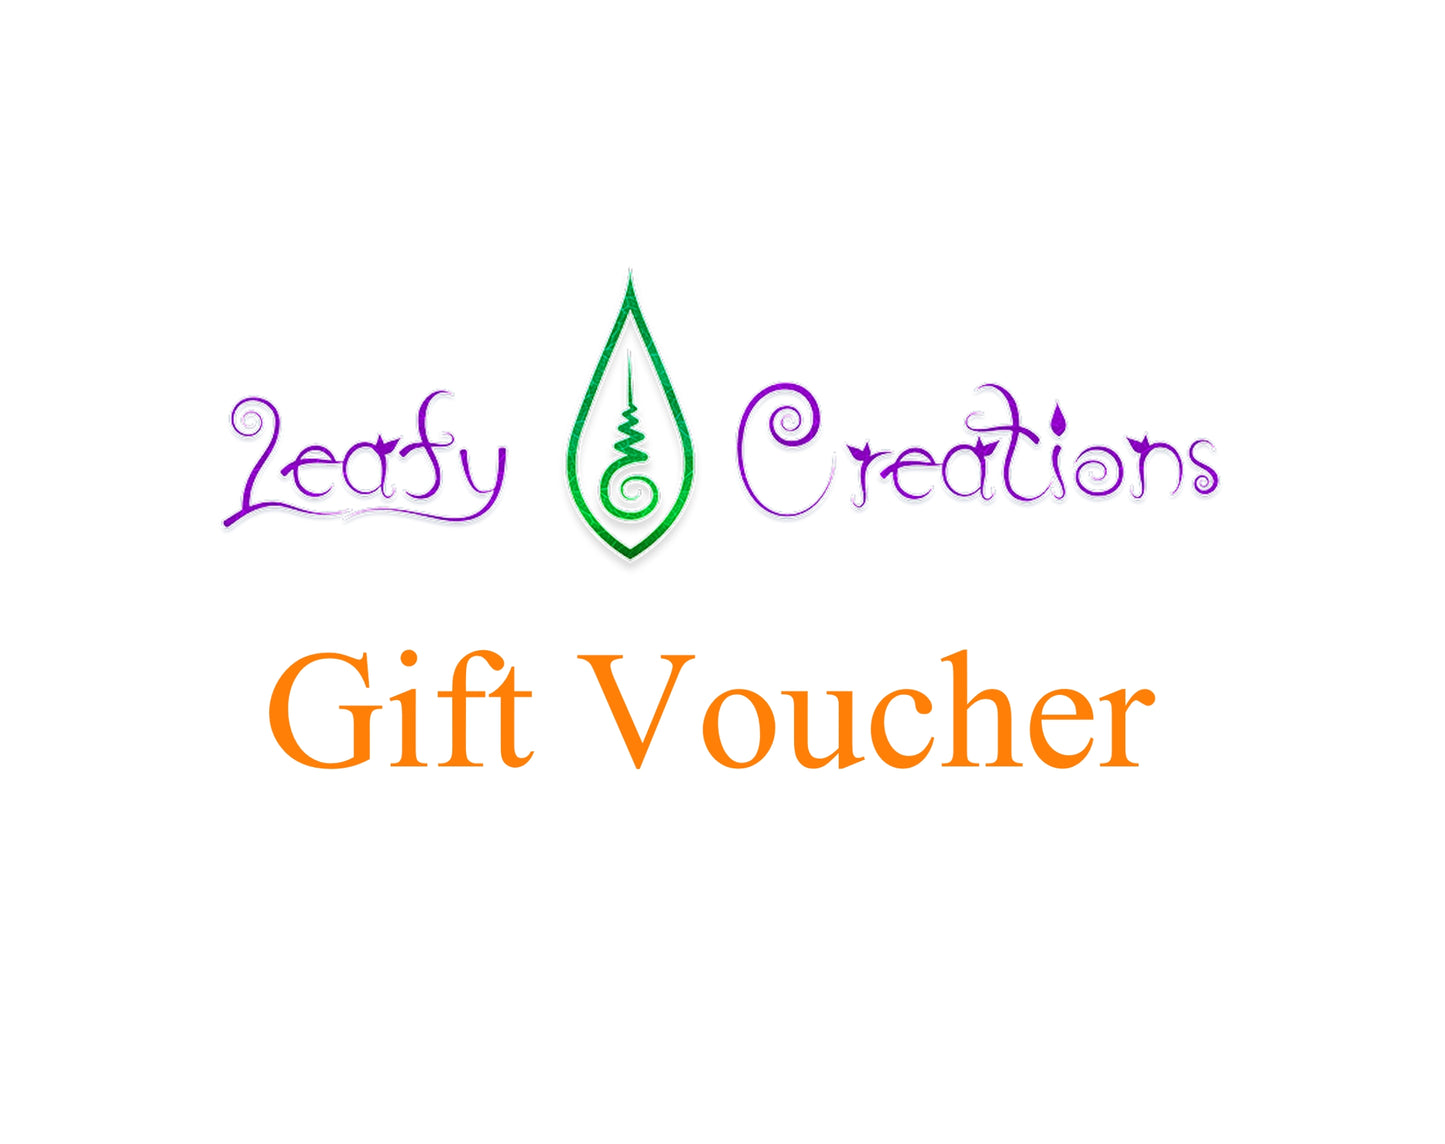 Leafy Creations $150 Gift Voucher